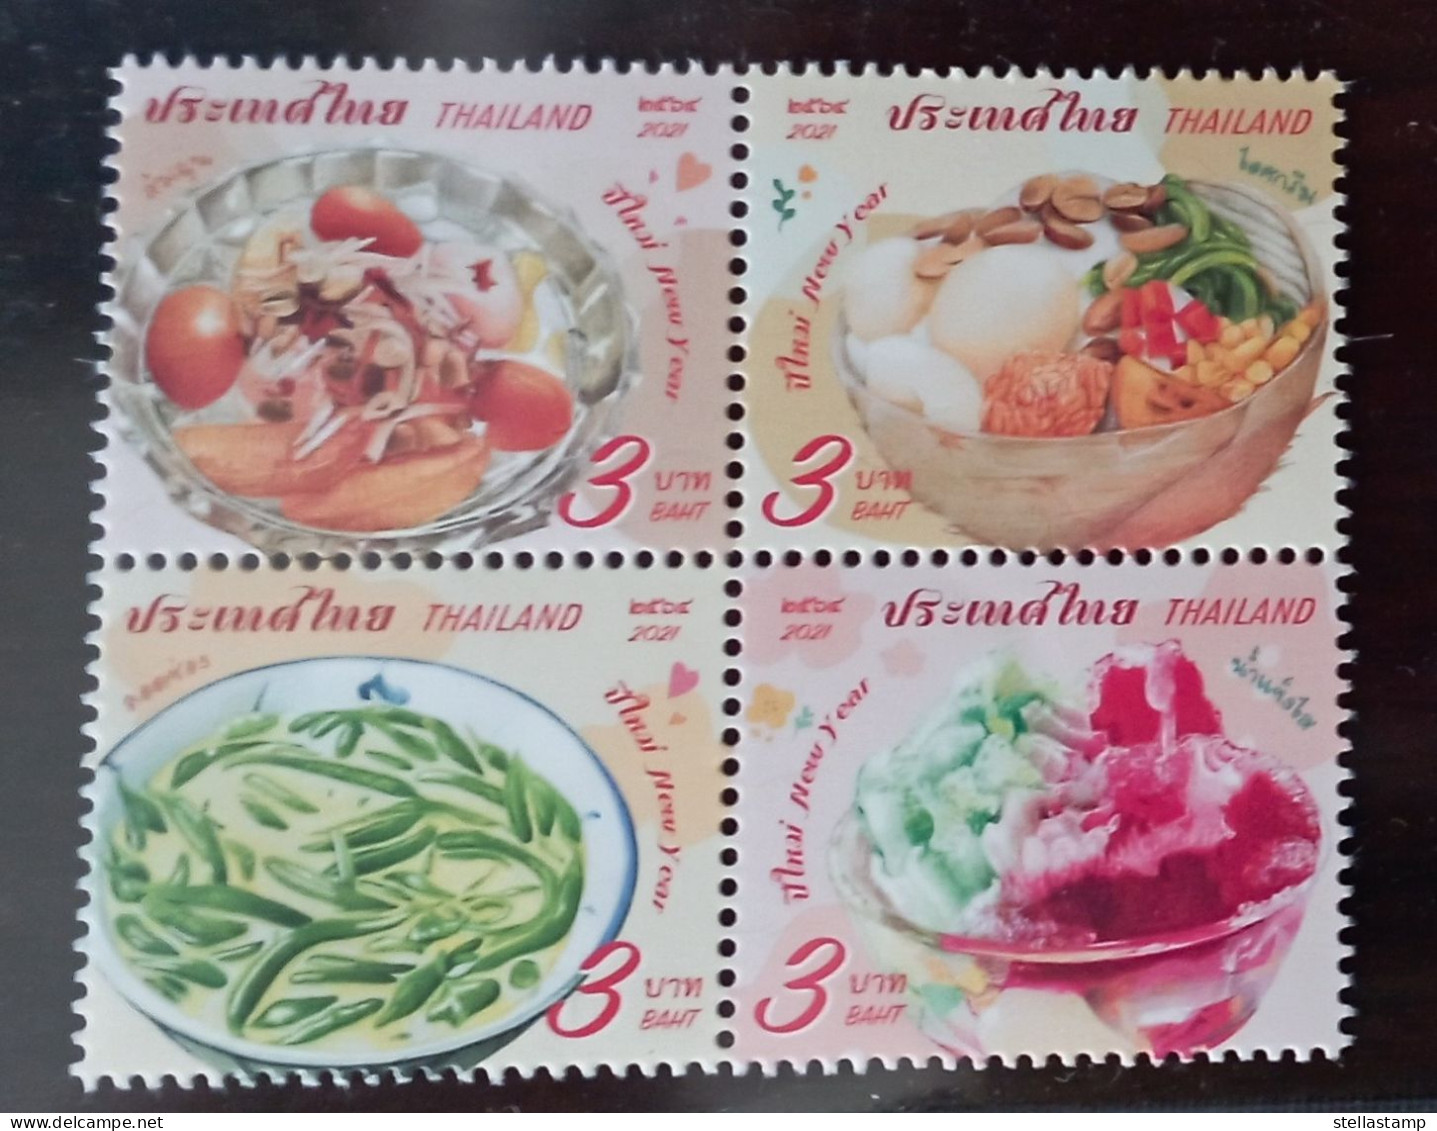 Thailand Stamp 2021 New Year Thai Sweet Dessert - Thailand